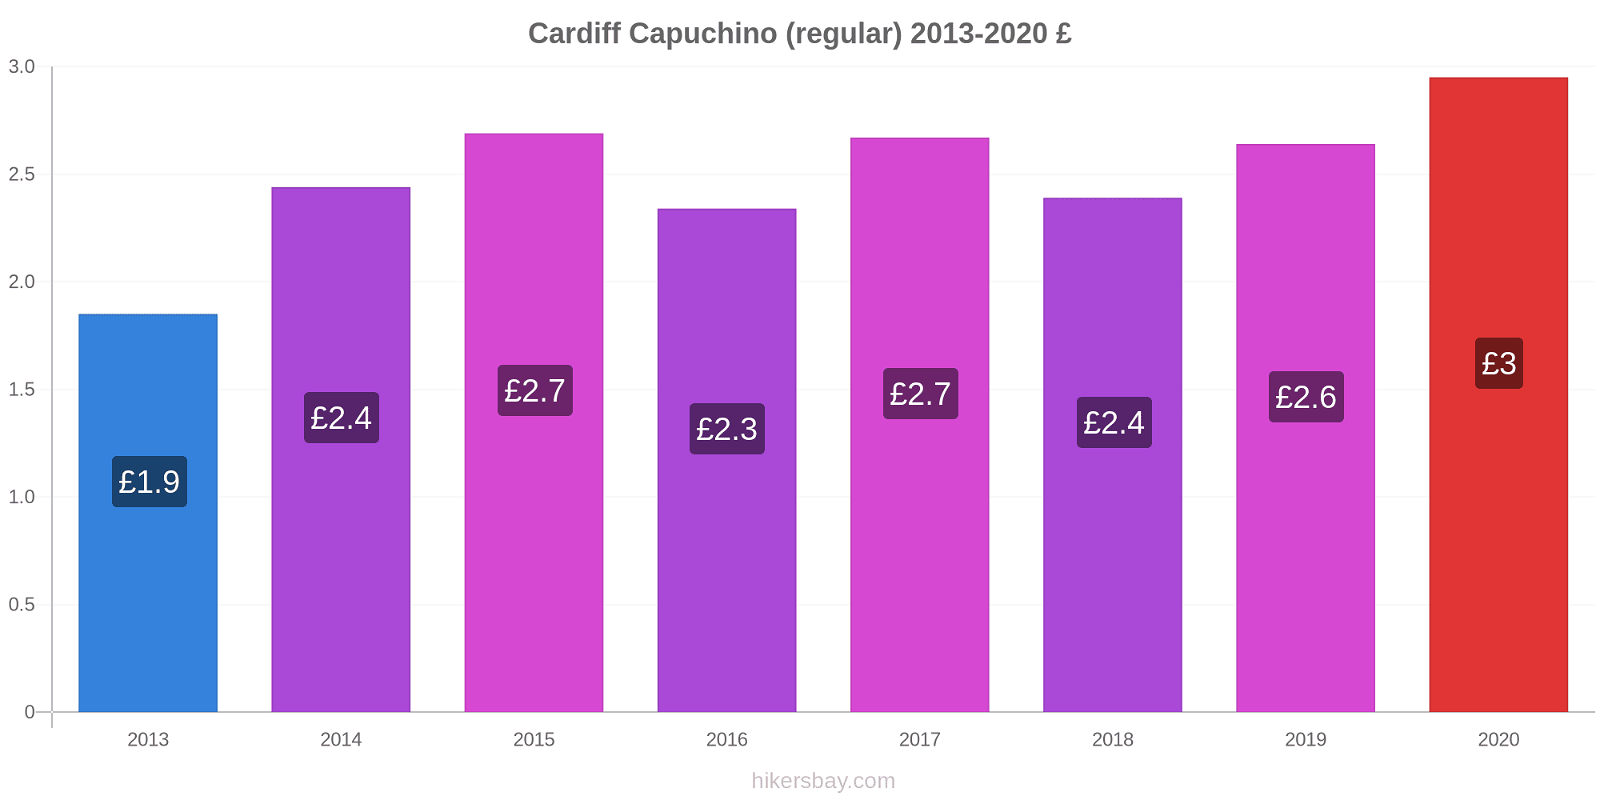 Cardiff cambios de precios Capuchino (regular) hikersbay.com